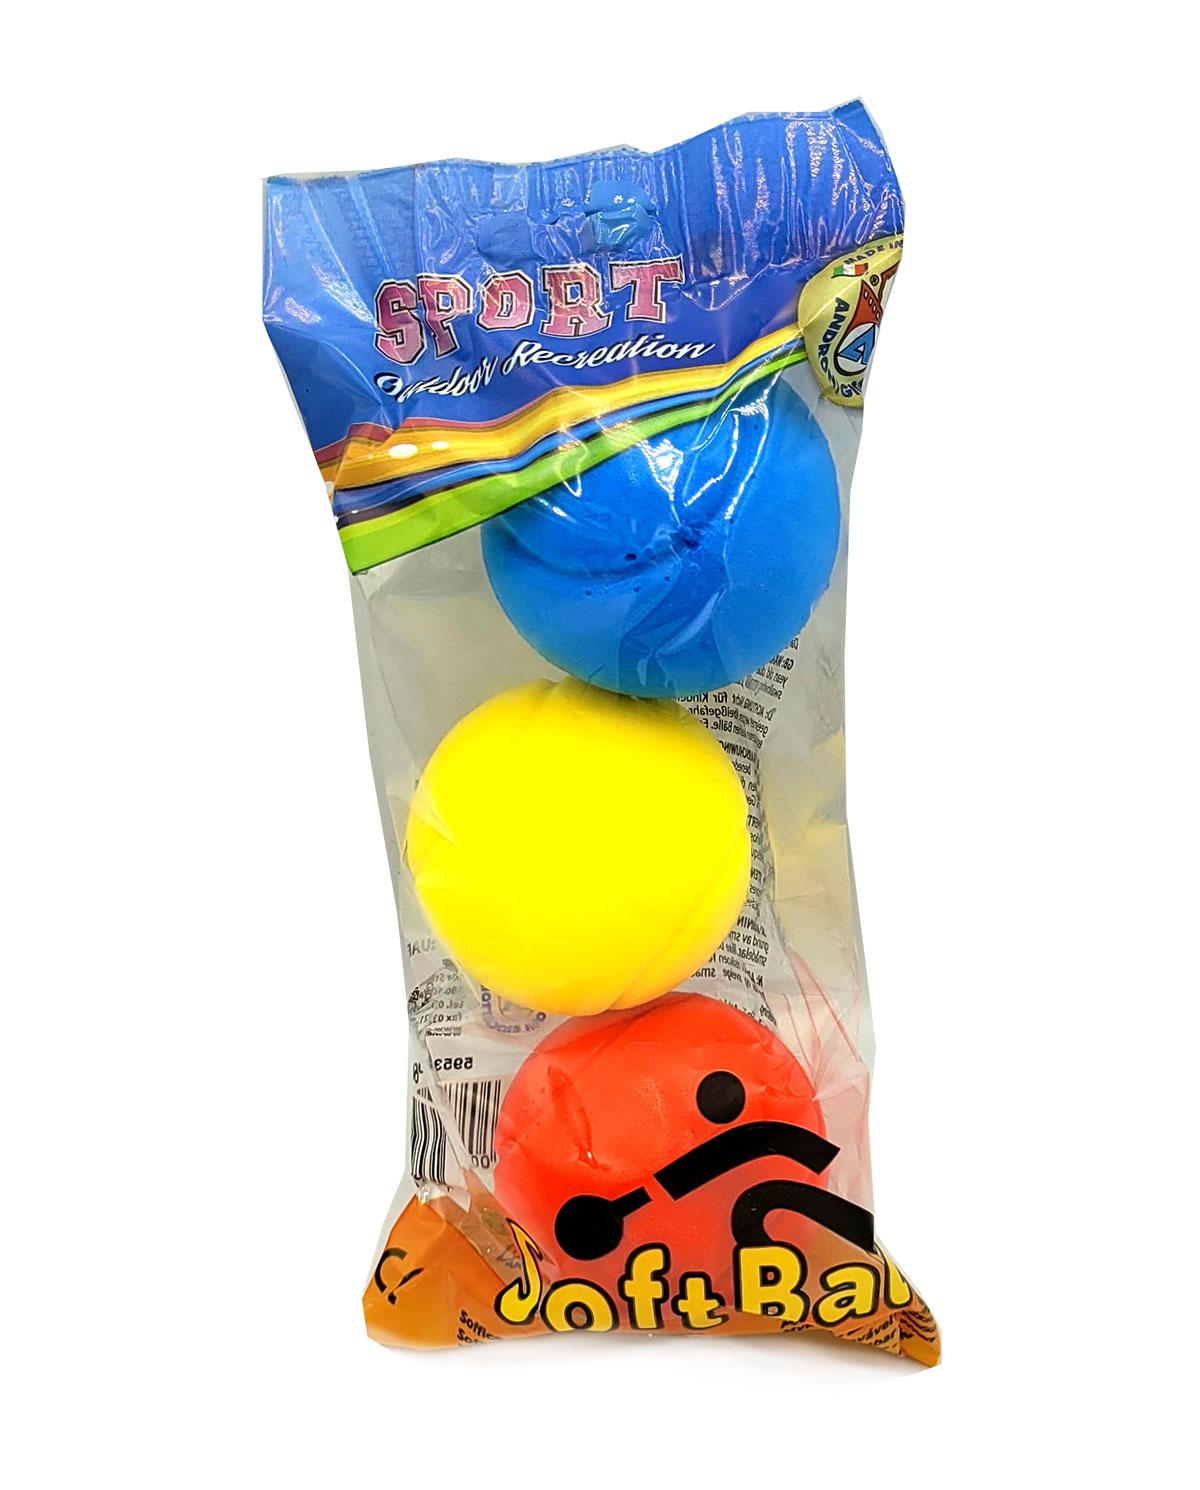 3 balles mousses en 3 couleurs (jaune-rouge et bleu)